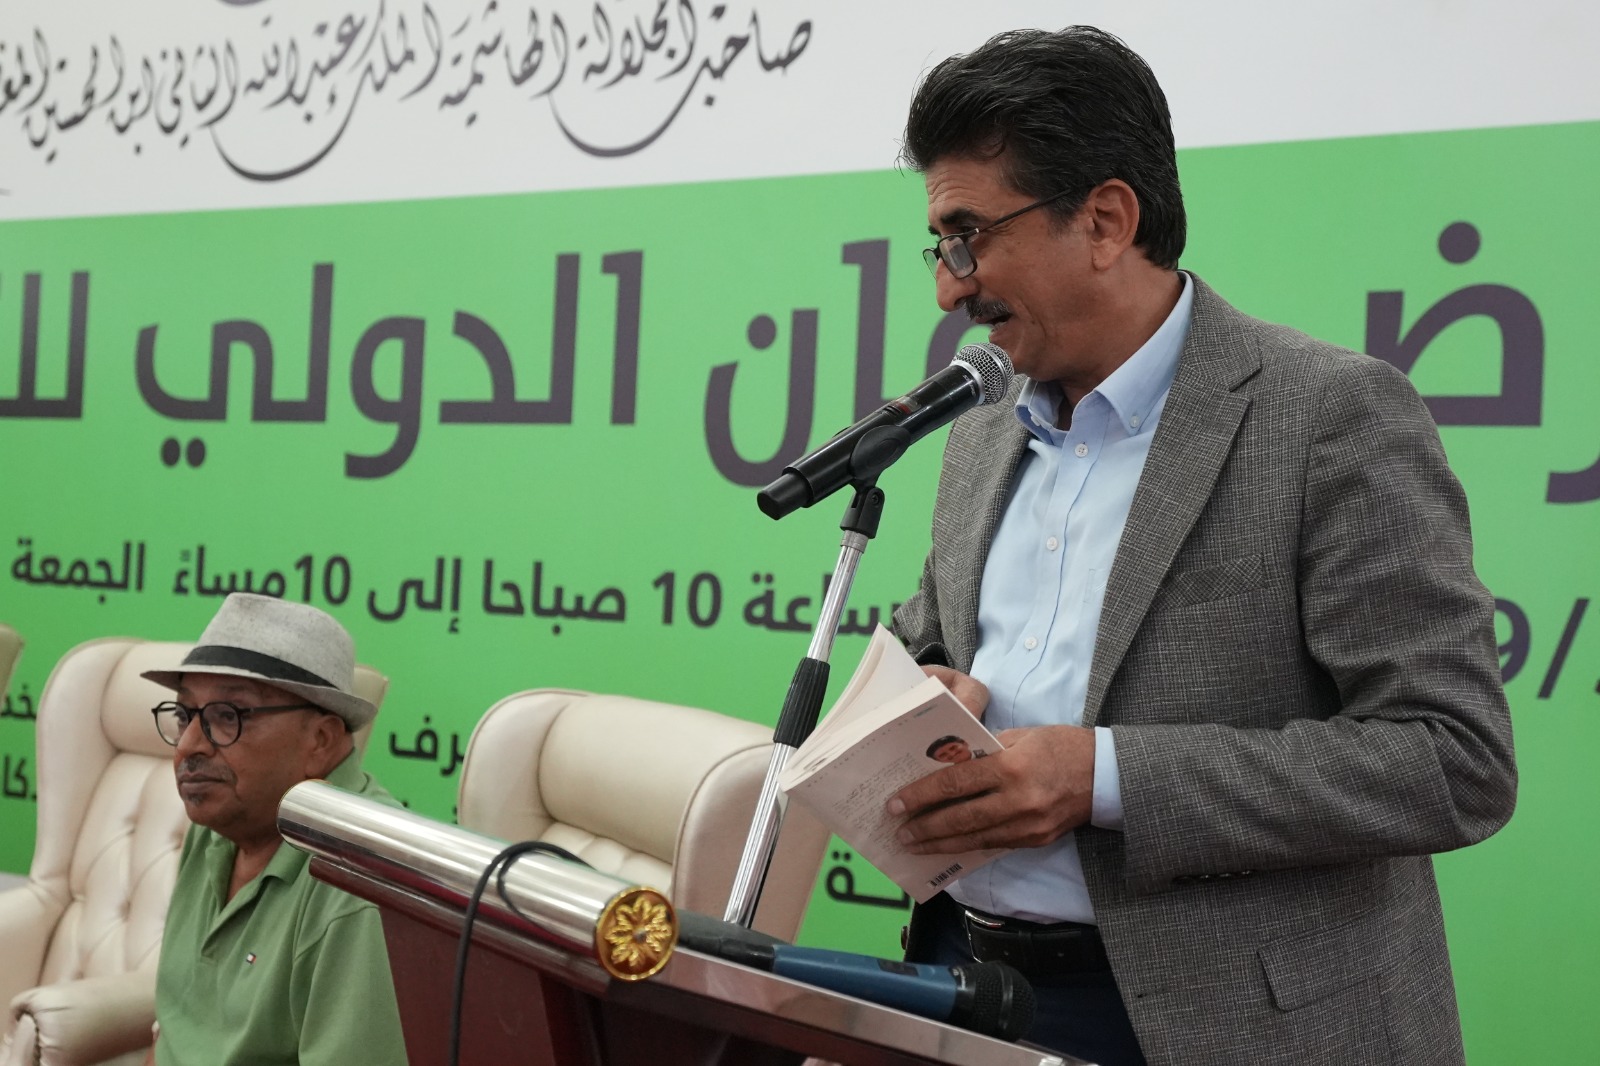 أمسيات شعرية وقصائد تخاطب الذات وقيم الجمال في معرض عمان للكتاب